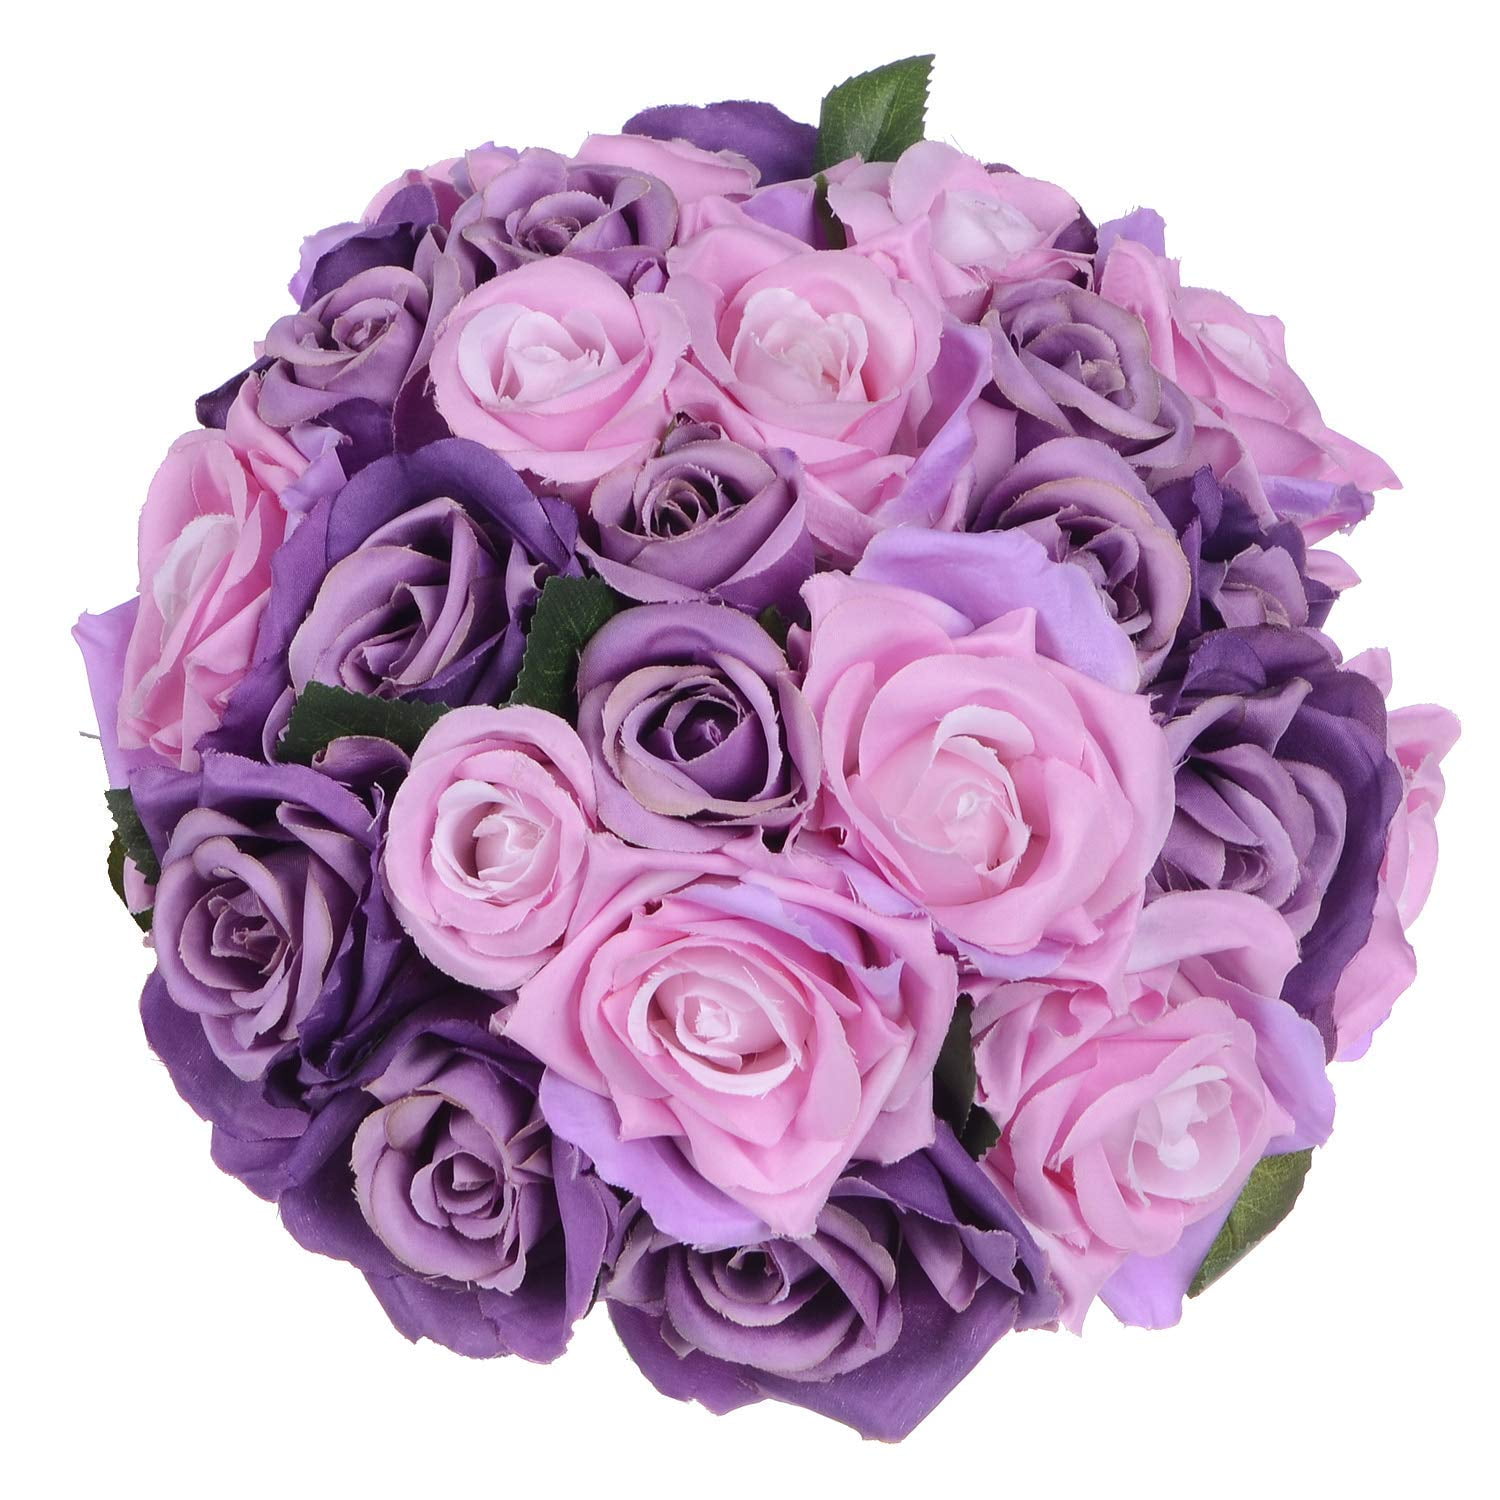 1 Bunch Artificial 18-Head Silk Rose Flower Bouquet Wedding Decor Light Pink 